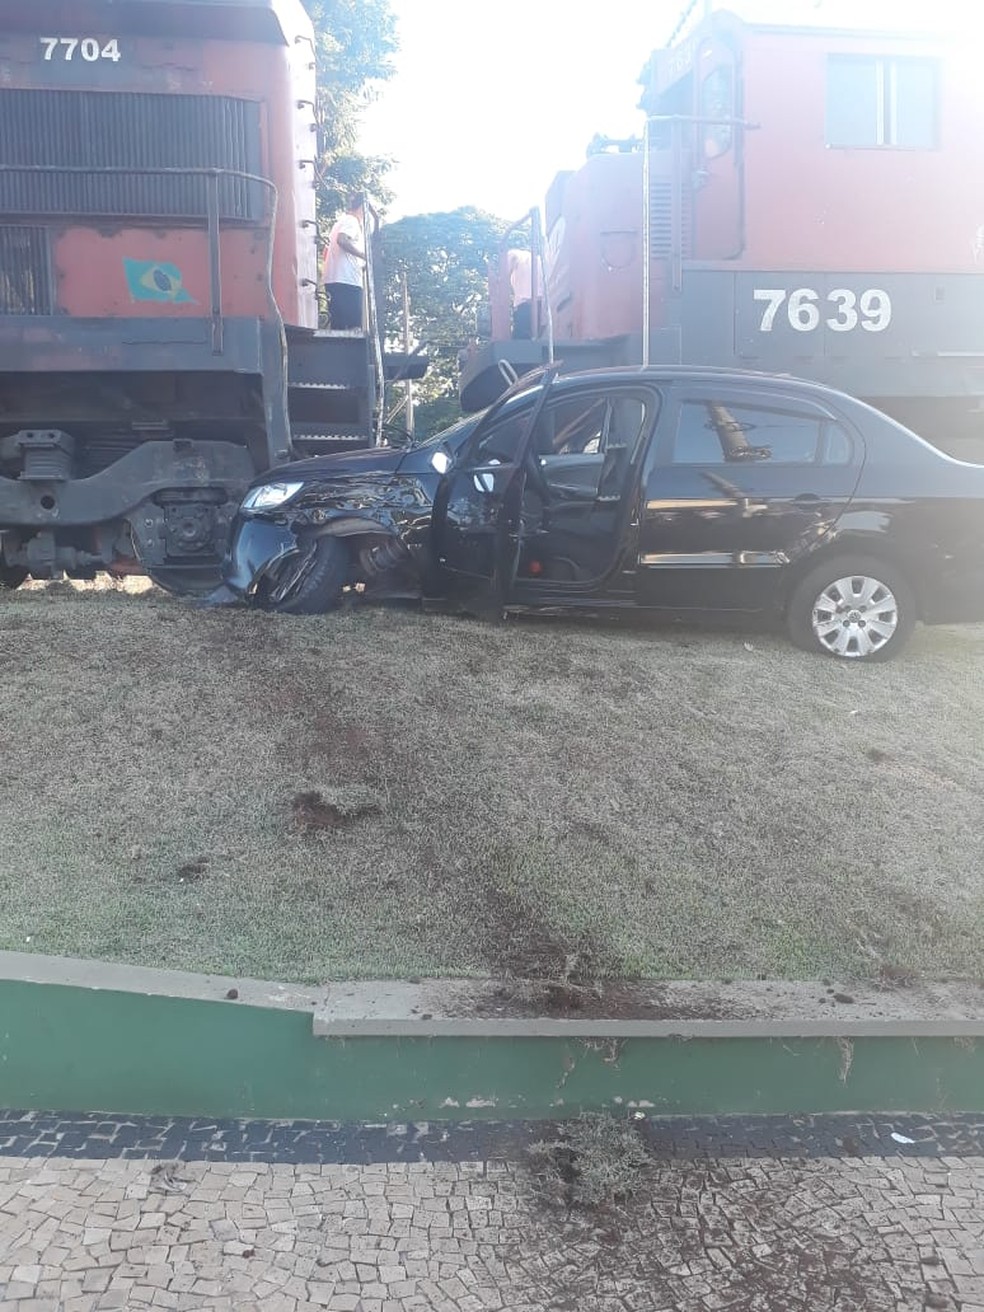 Idosos não ficaram feridos após batida entre carro e trem em Cerquilho (SP) — Foto: Arquivo Pessoal